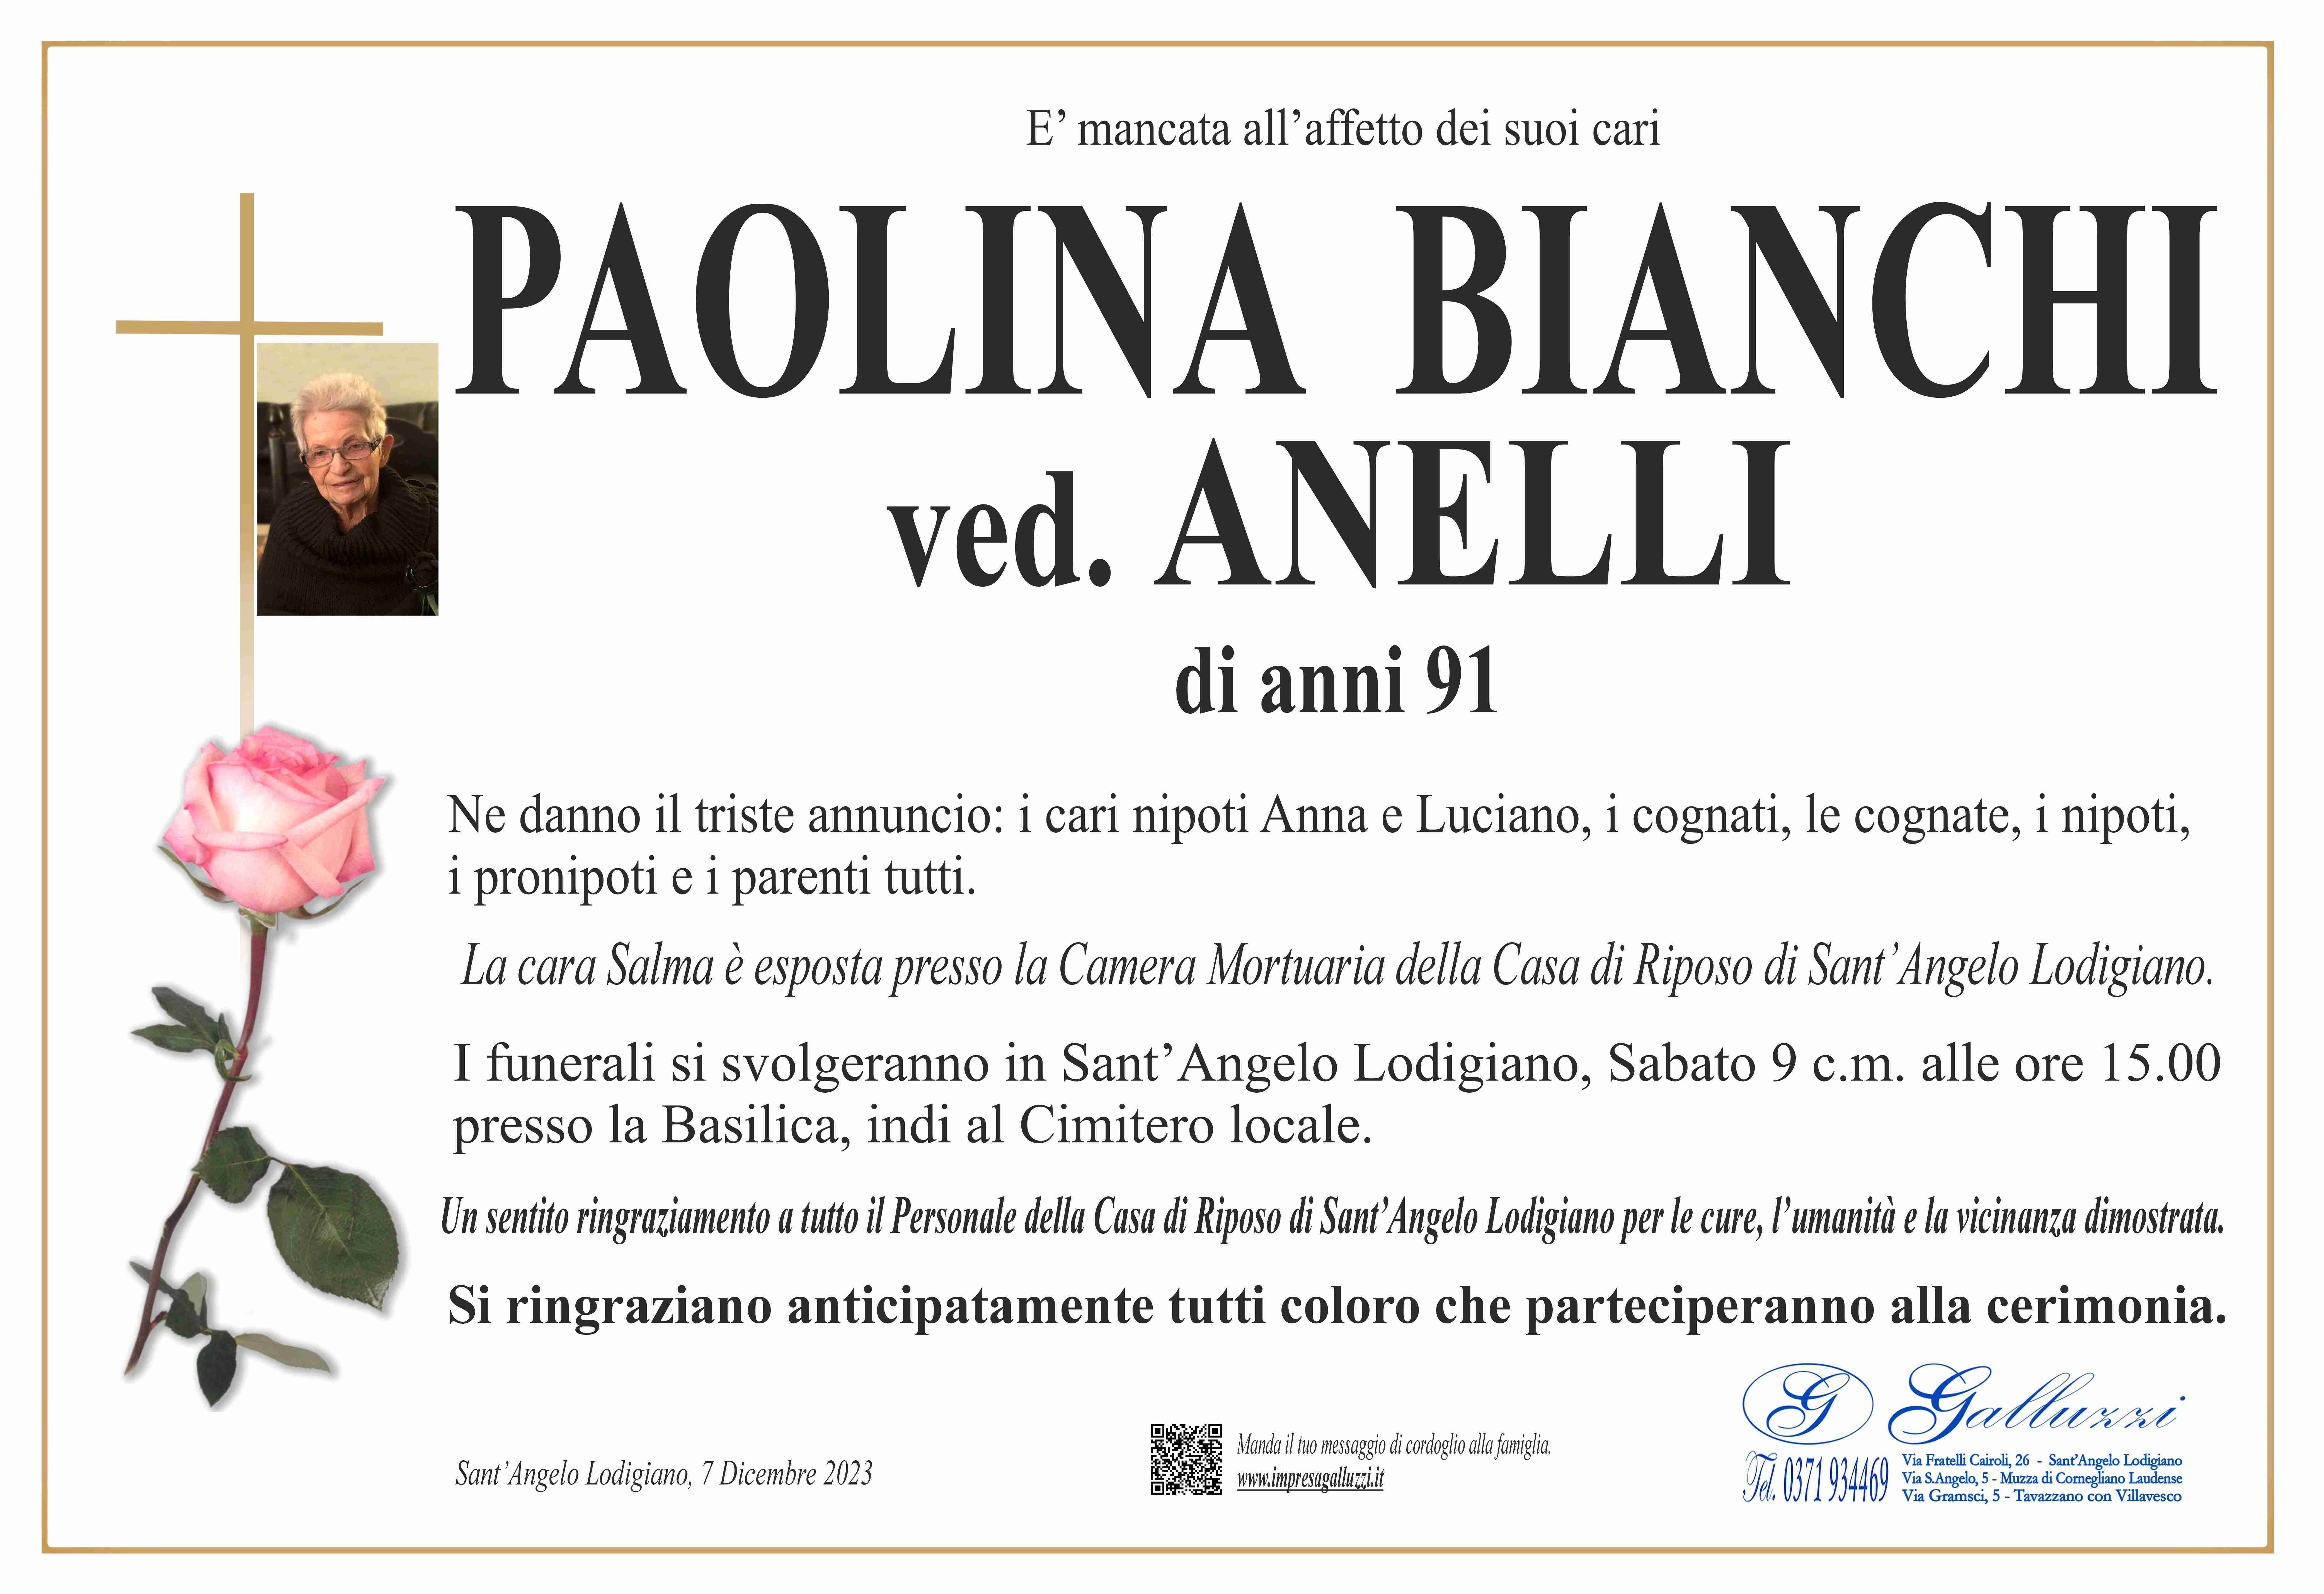 Paolina Bianchi